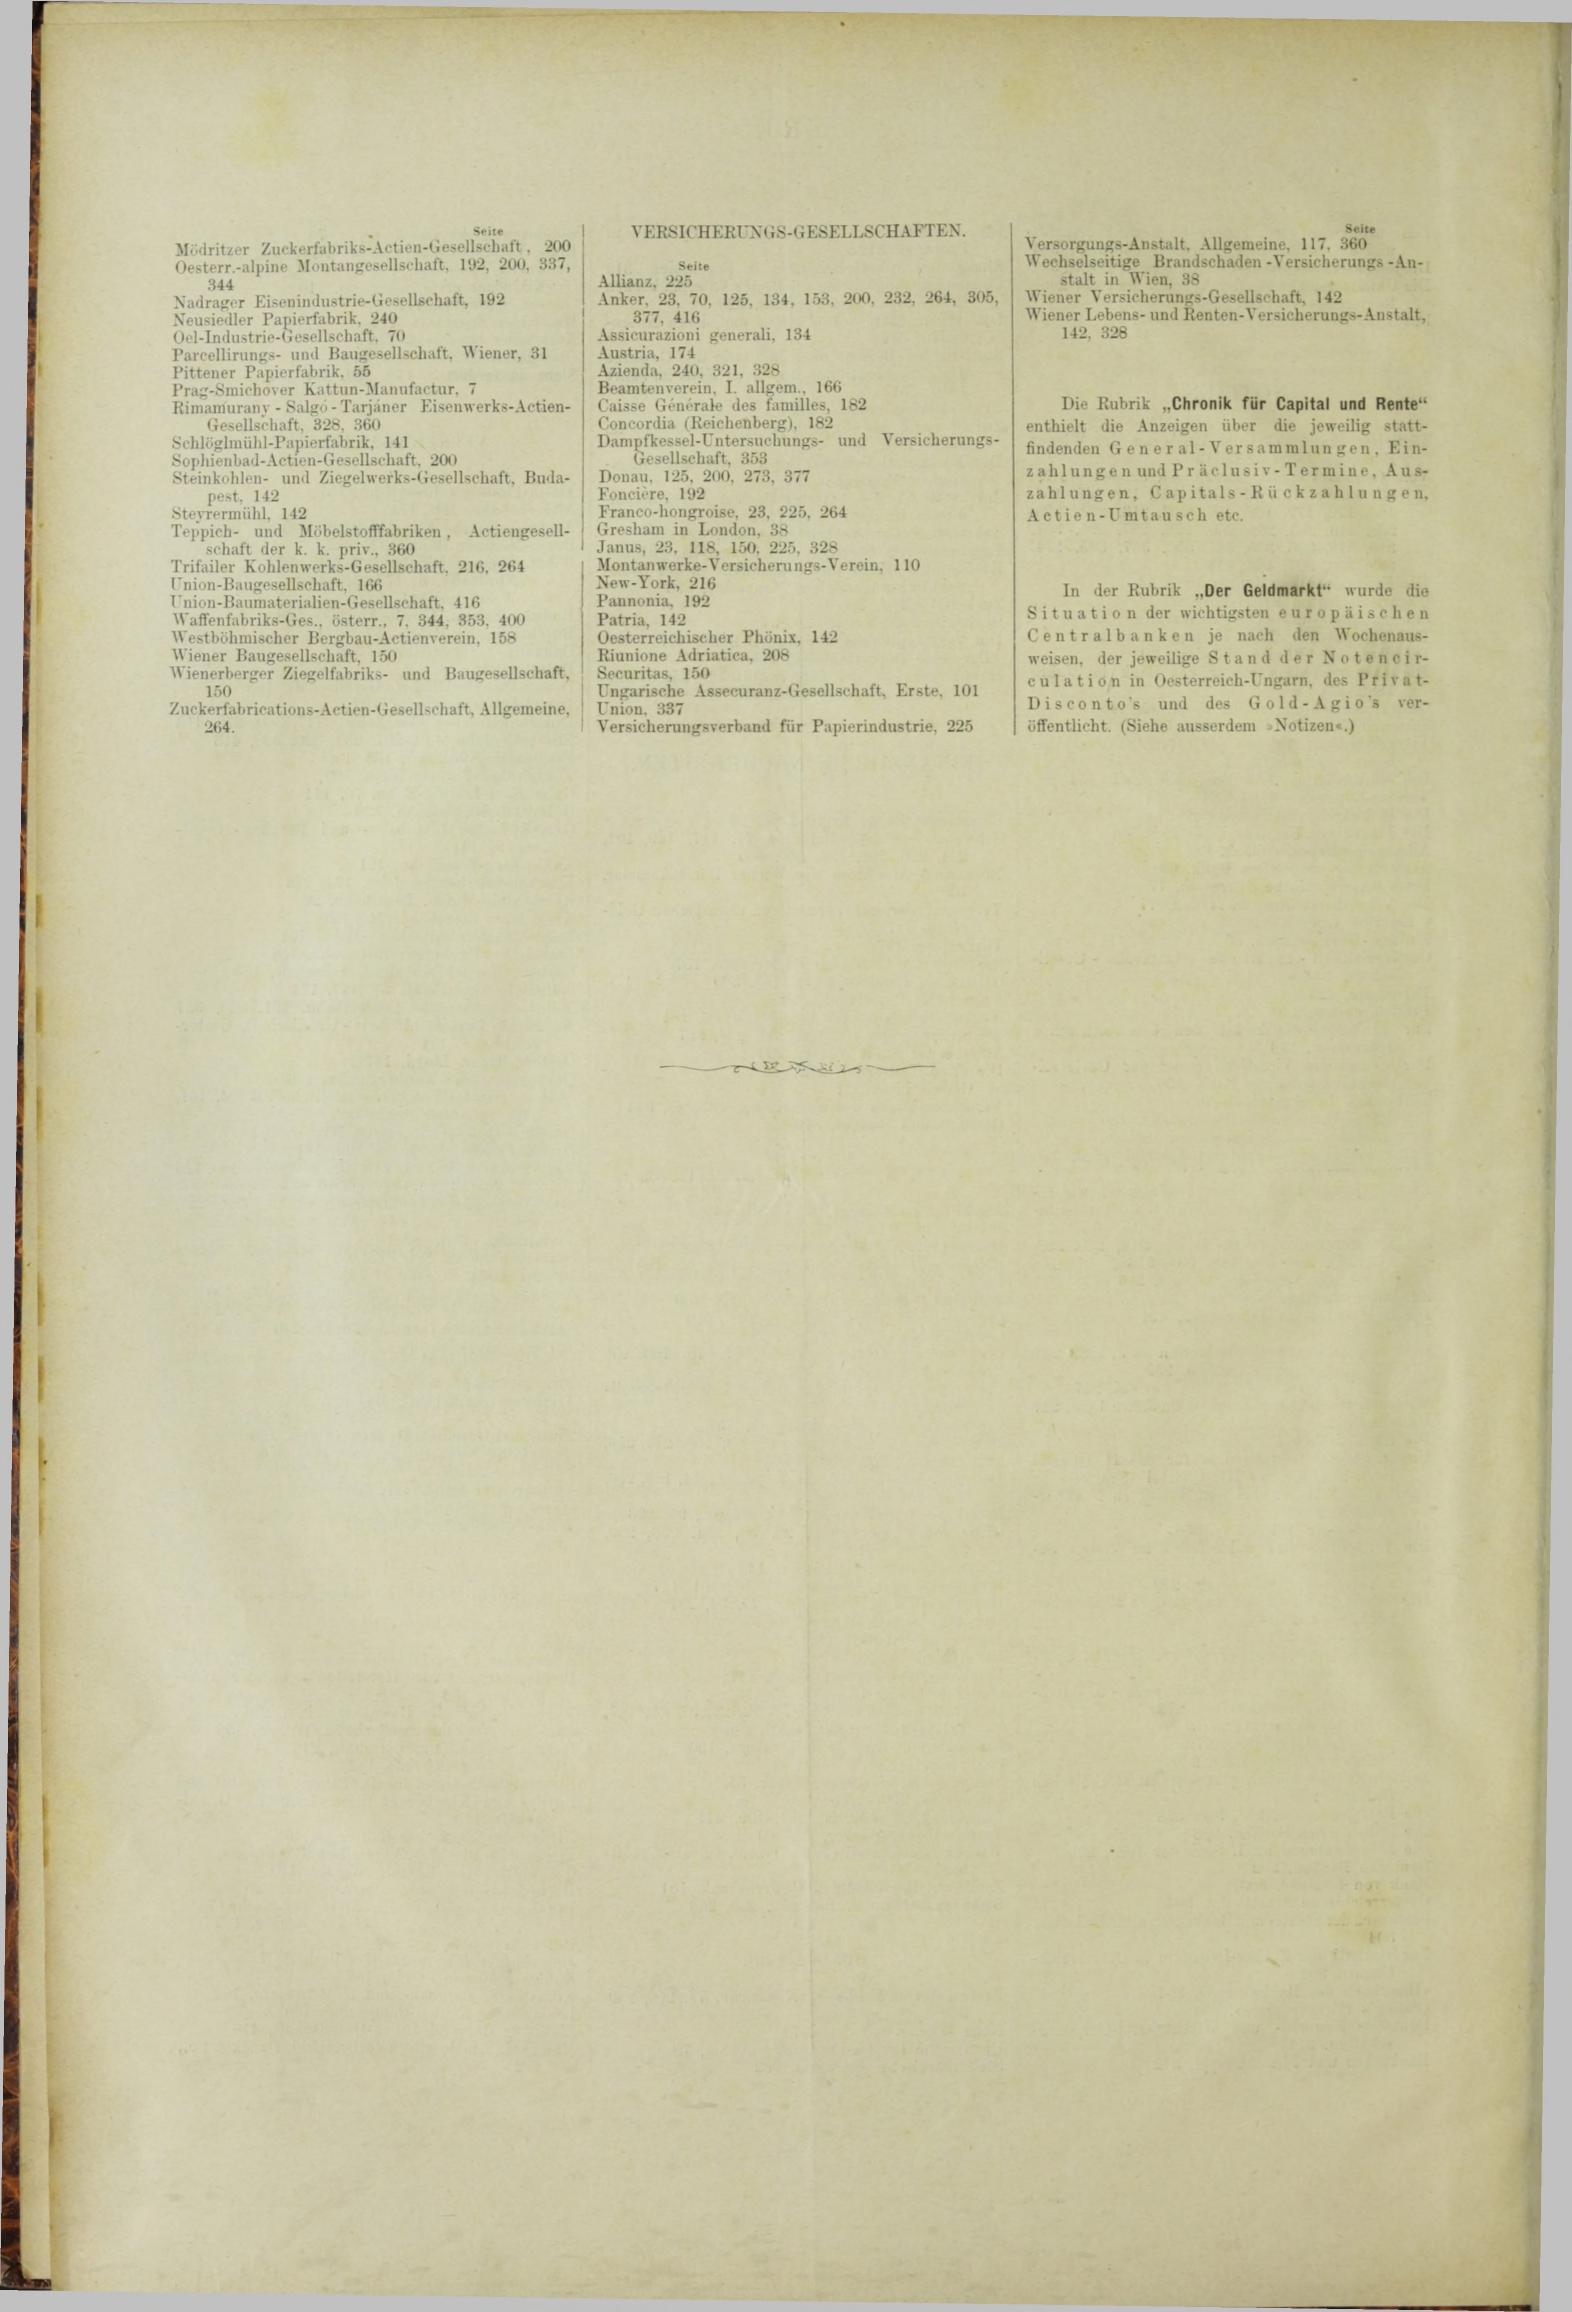 Der Tresor 27.09.1883 - Seite 12